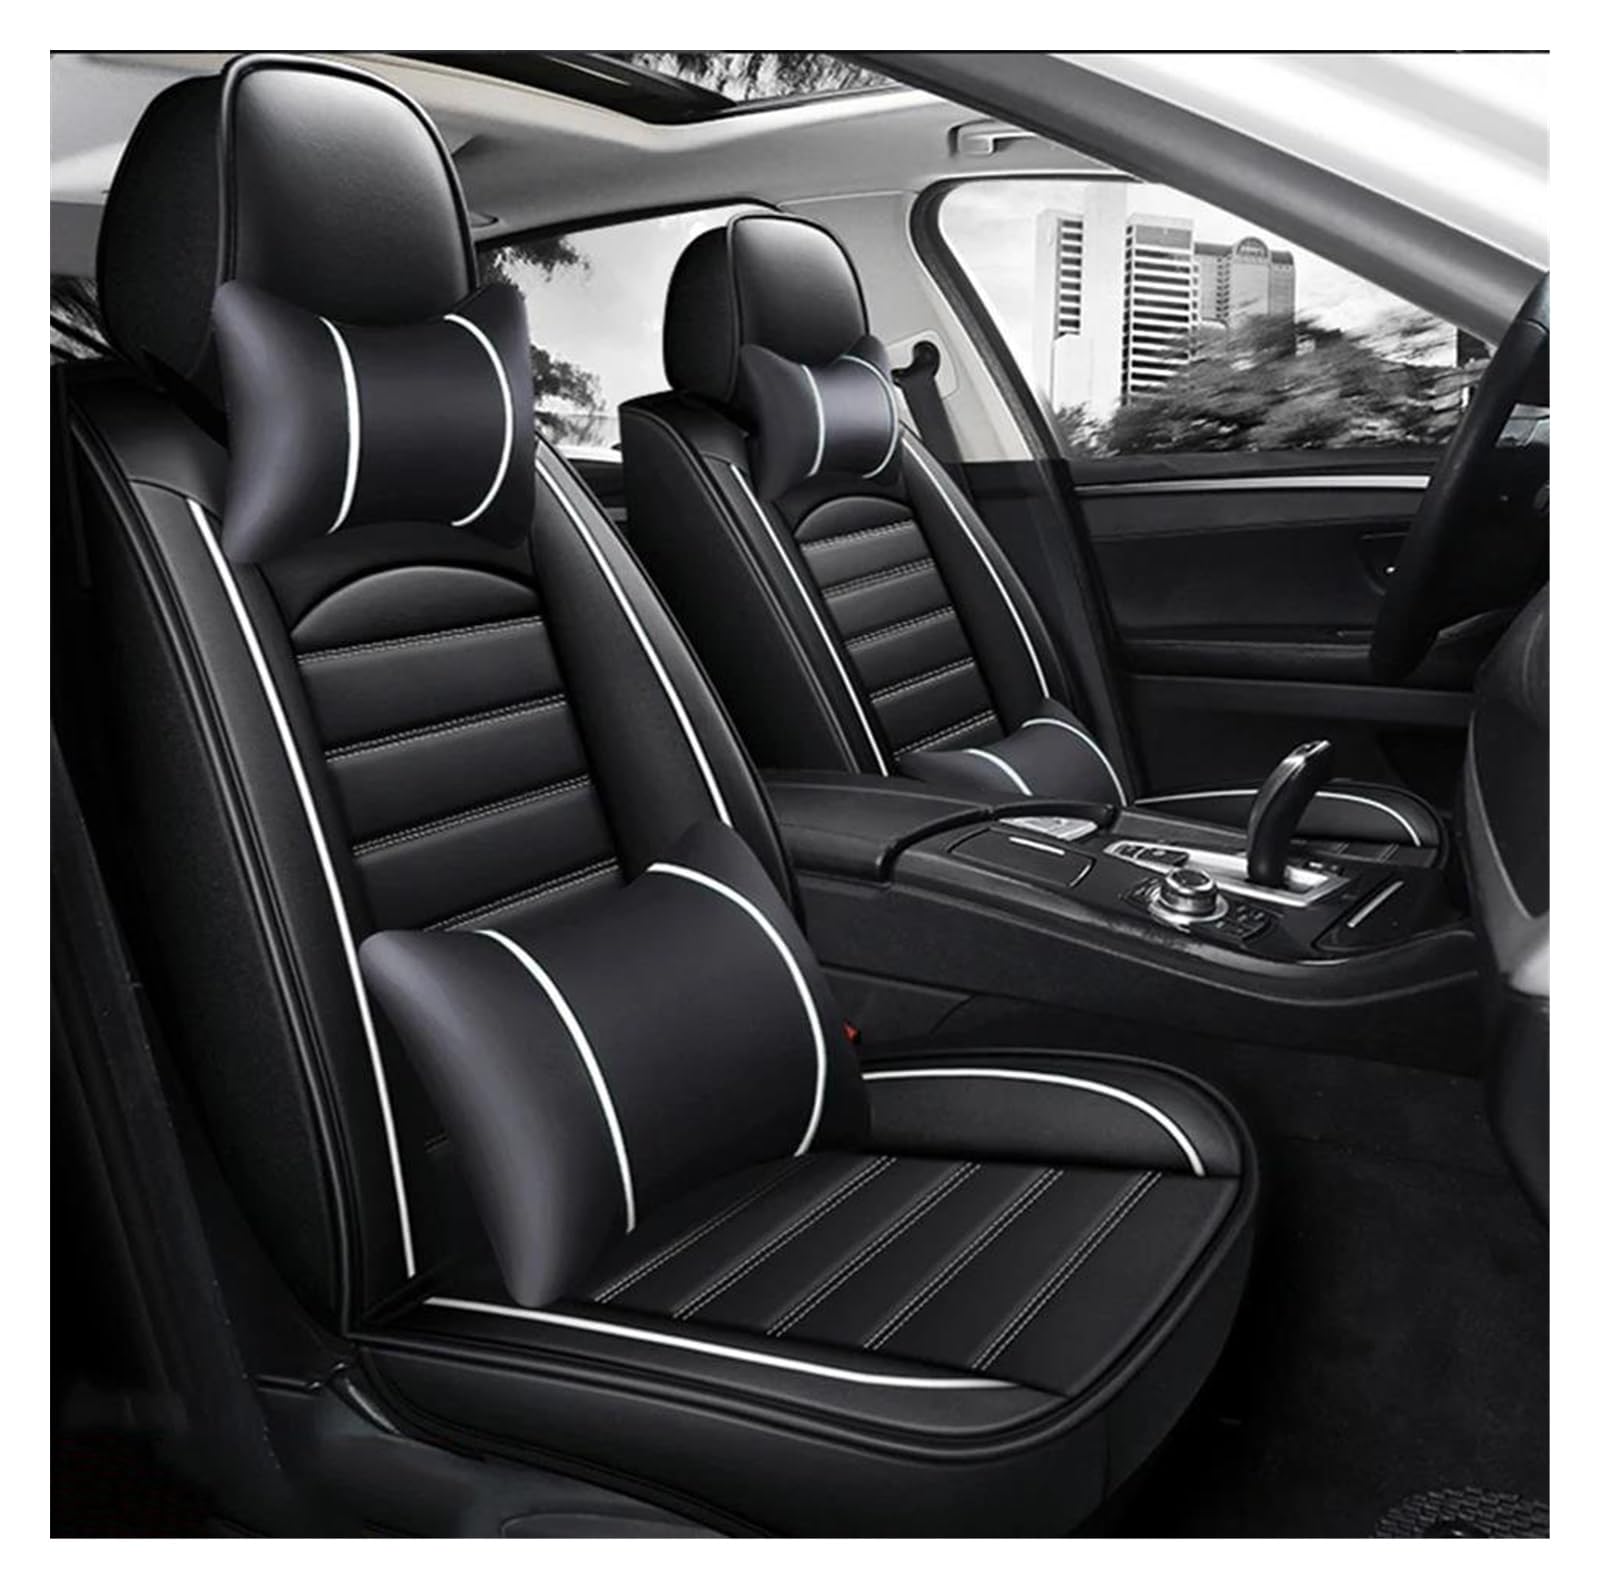 DZSHONGXINSM Sitzbezüge Auto Universal Autositzbezug Innendetails Für Q5 Q2 Q3 Q6 Q7 Q8 S1 S4 S5 S6 SQ5 RS3 RS4 RS5 Autozubehör Sitzschutz Sitzbezügesets(Luxury Black White) von DZSHONGXINSM